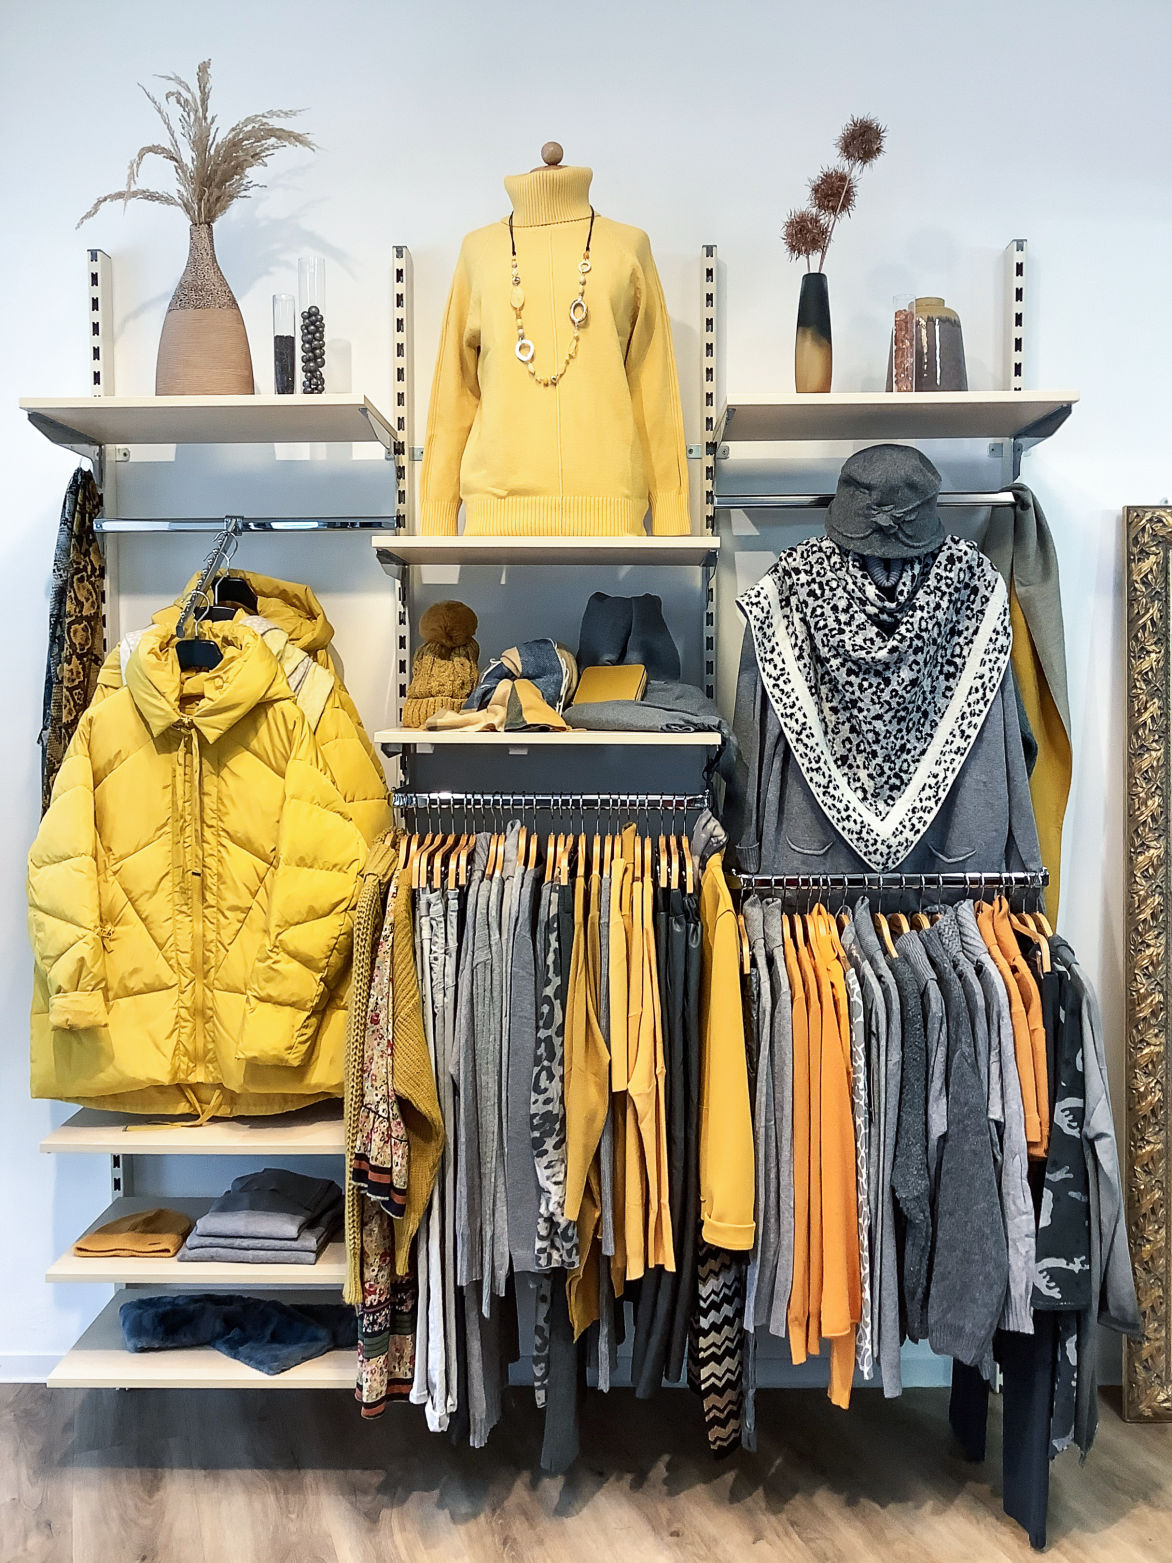 Jacken, Hosen, Accessoires, Damenbekleidung in grau und gelb Farben